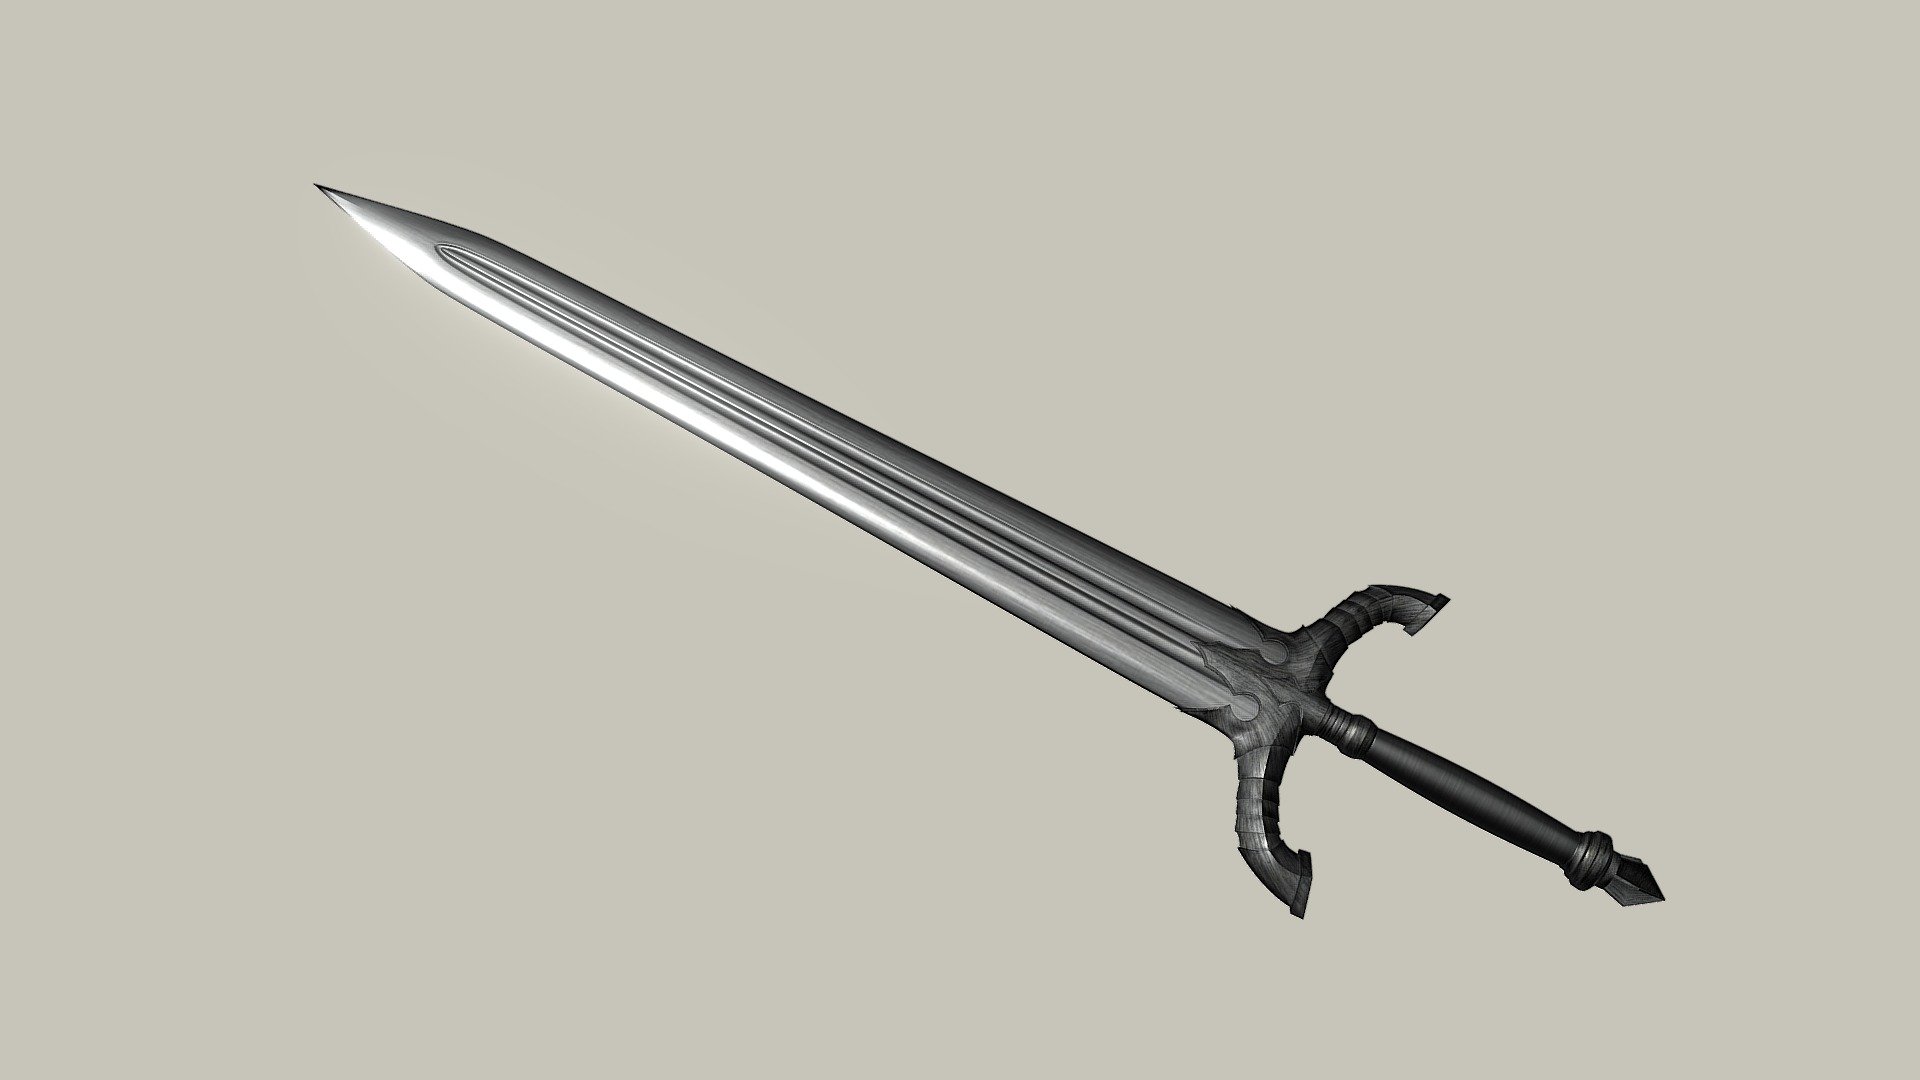 Sword from Dark Souls game - Black Knight sword - 3D model by Hattiffnat 3d model